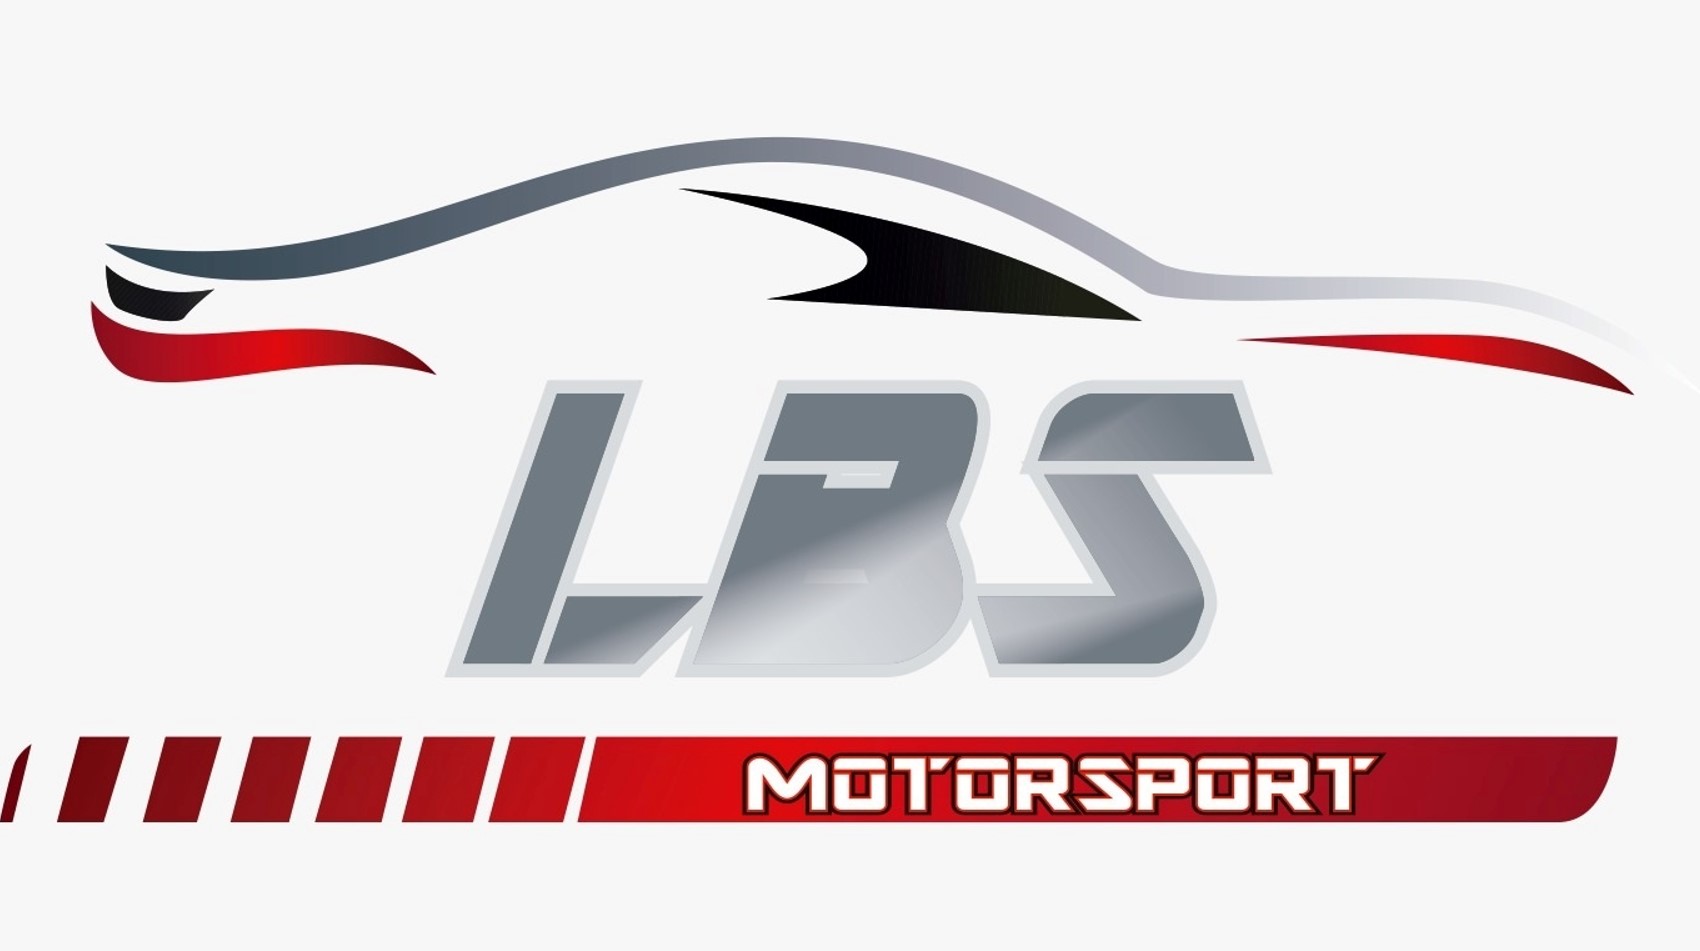 LBS Motorsport